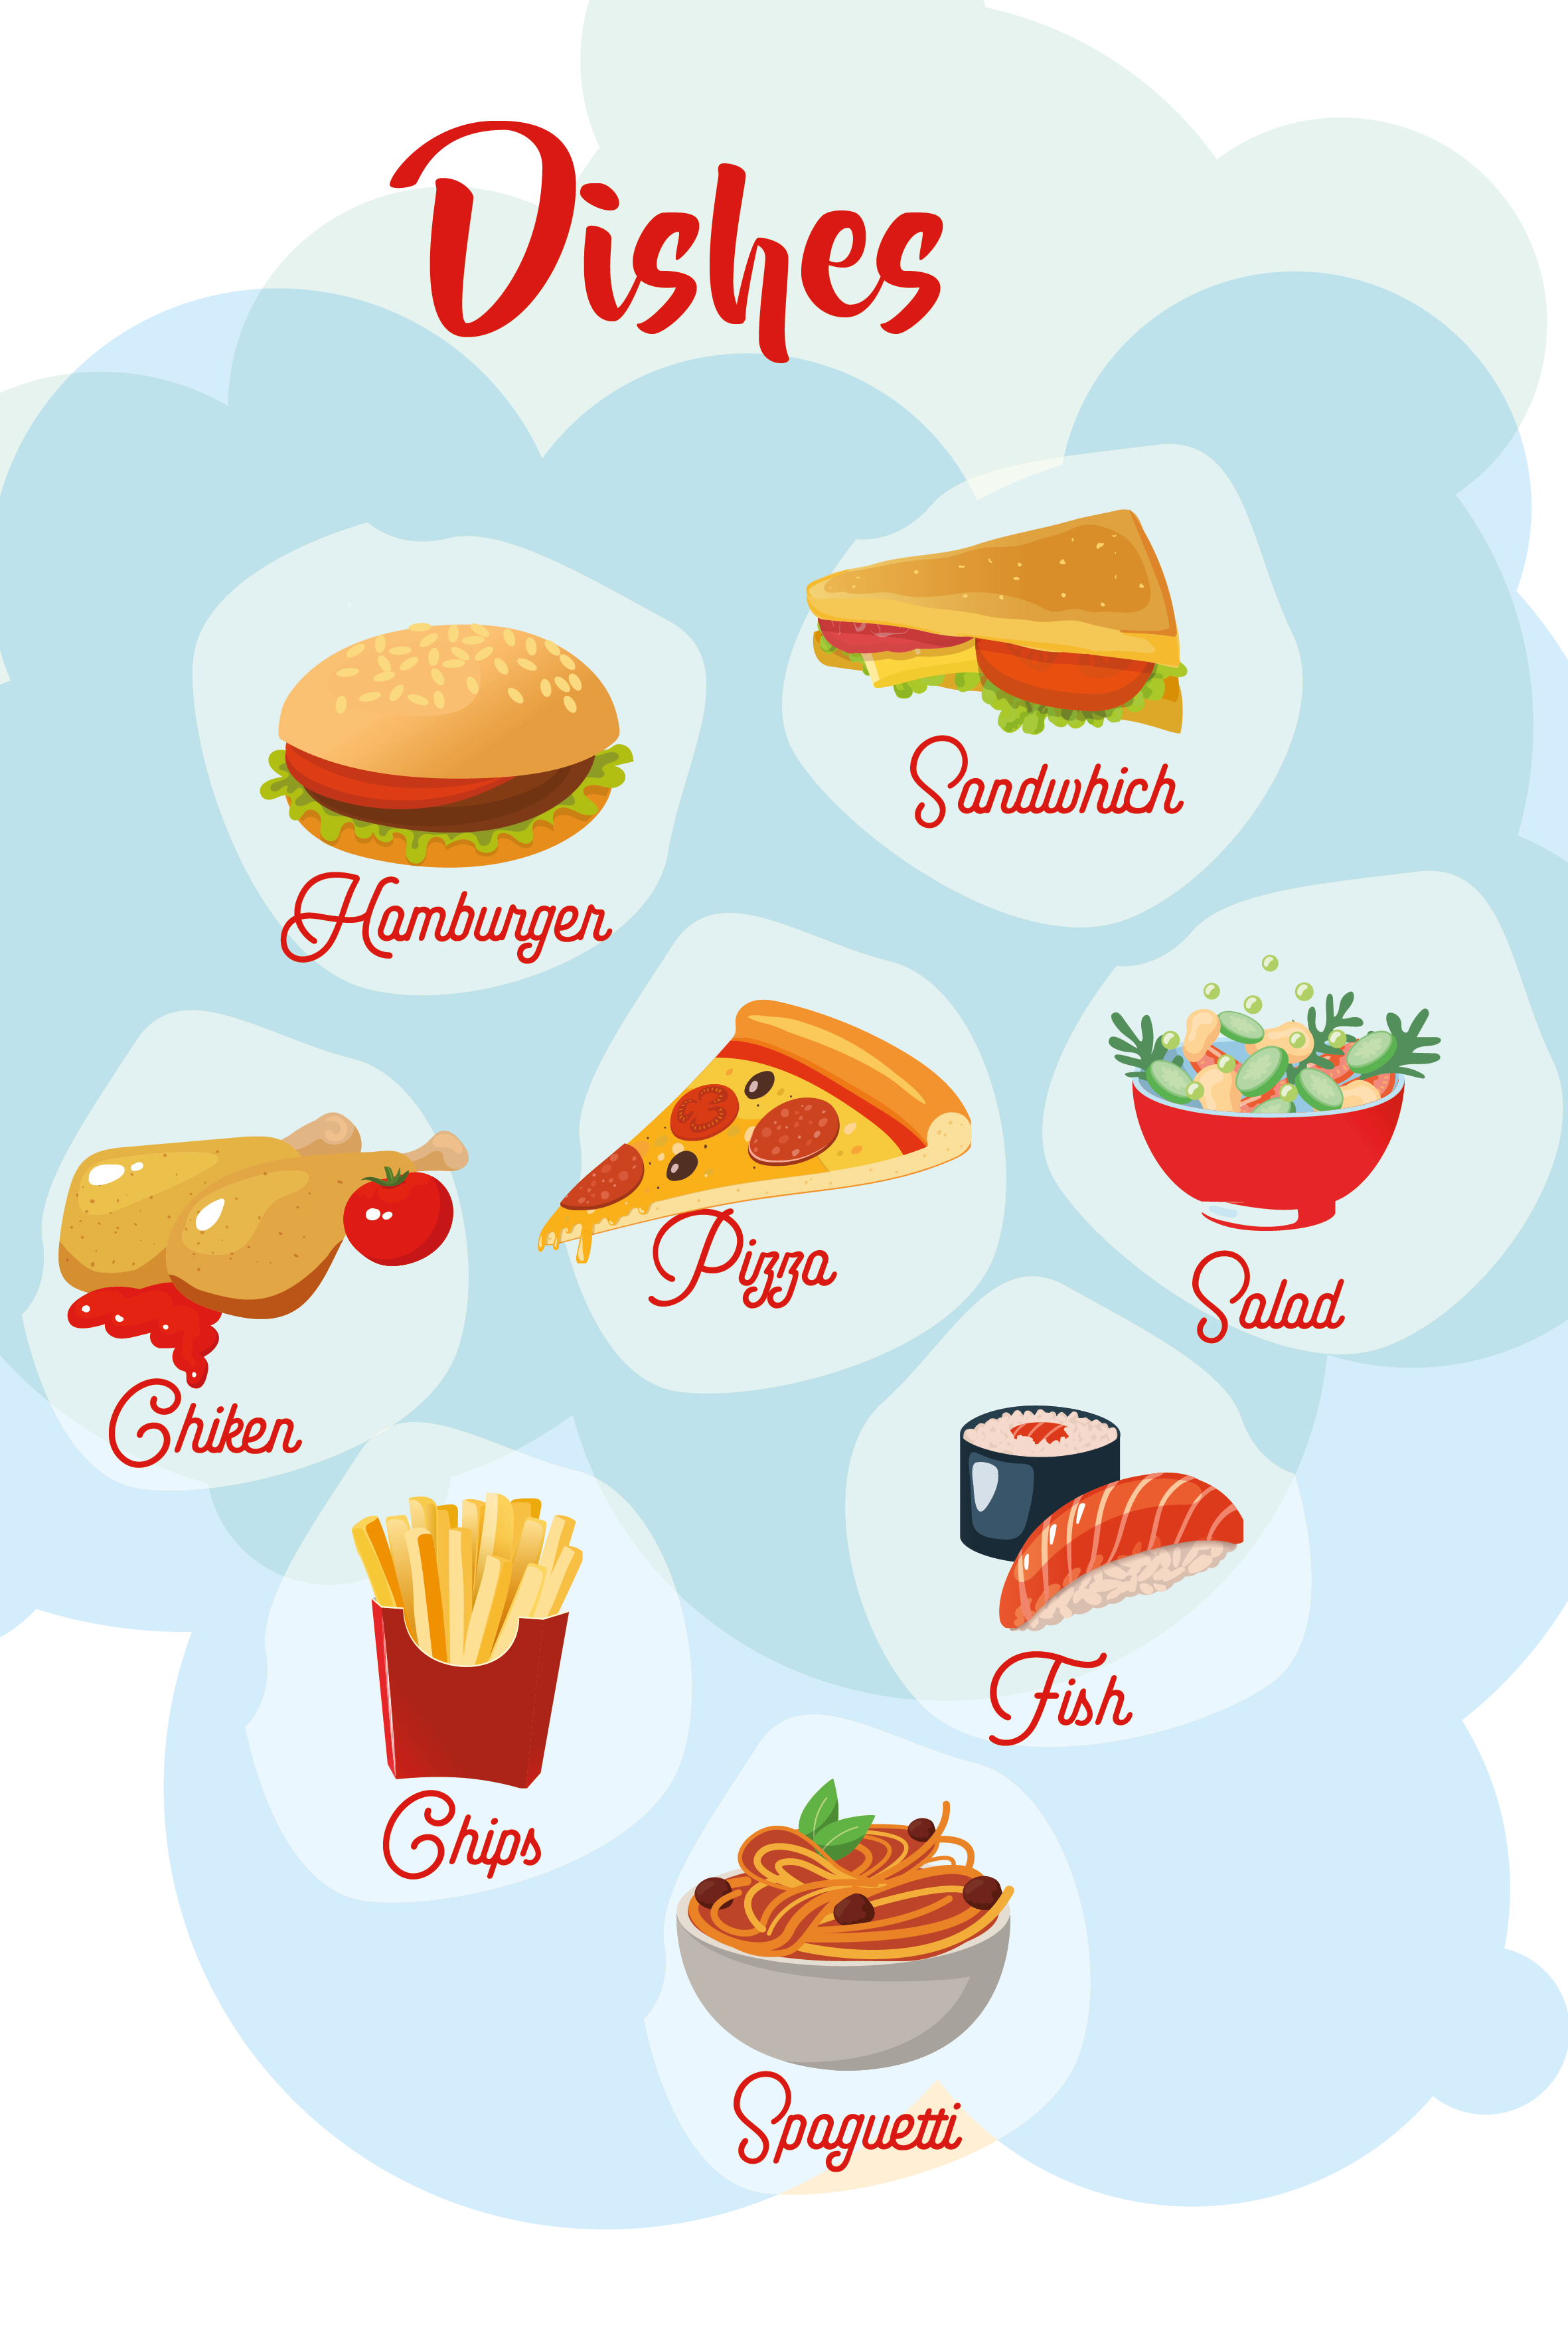 En la imagen se pueden observar ocho platos de comida diferentes, con sus nombres en inglés. Estos platos son: hamburguesa (en inglés, hamburger), sandwich (en inglés, sandwich), ensalada (en inglés, salad), pizza (en inglés, pizza), un pescado (en inglés, fish), patatas fritas (en inglés, chips), pollo asado (en inglés, chicken) y por último un plato de espaguetis (en inglés, spaguettis)